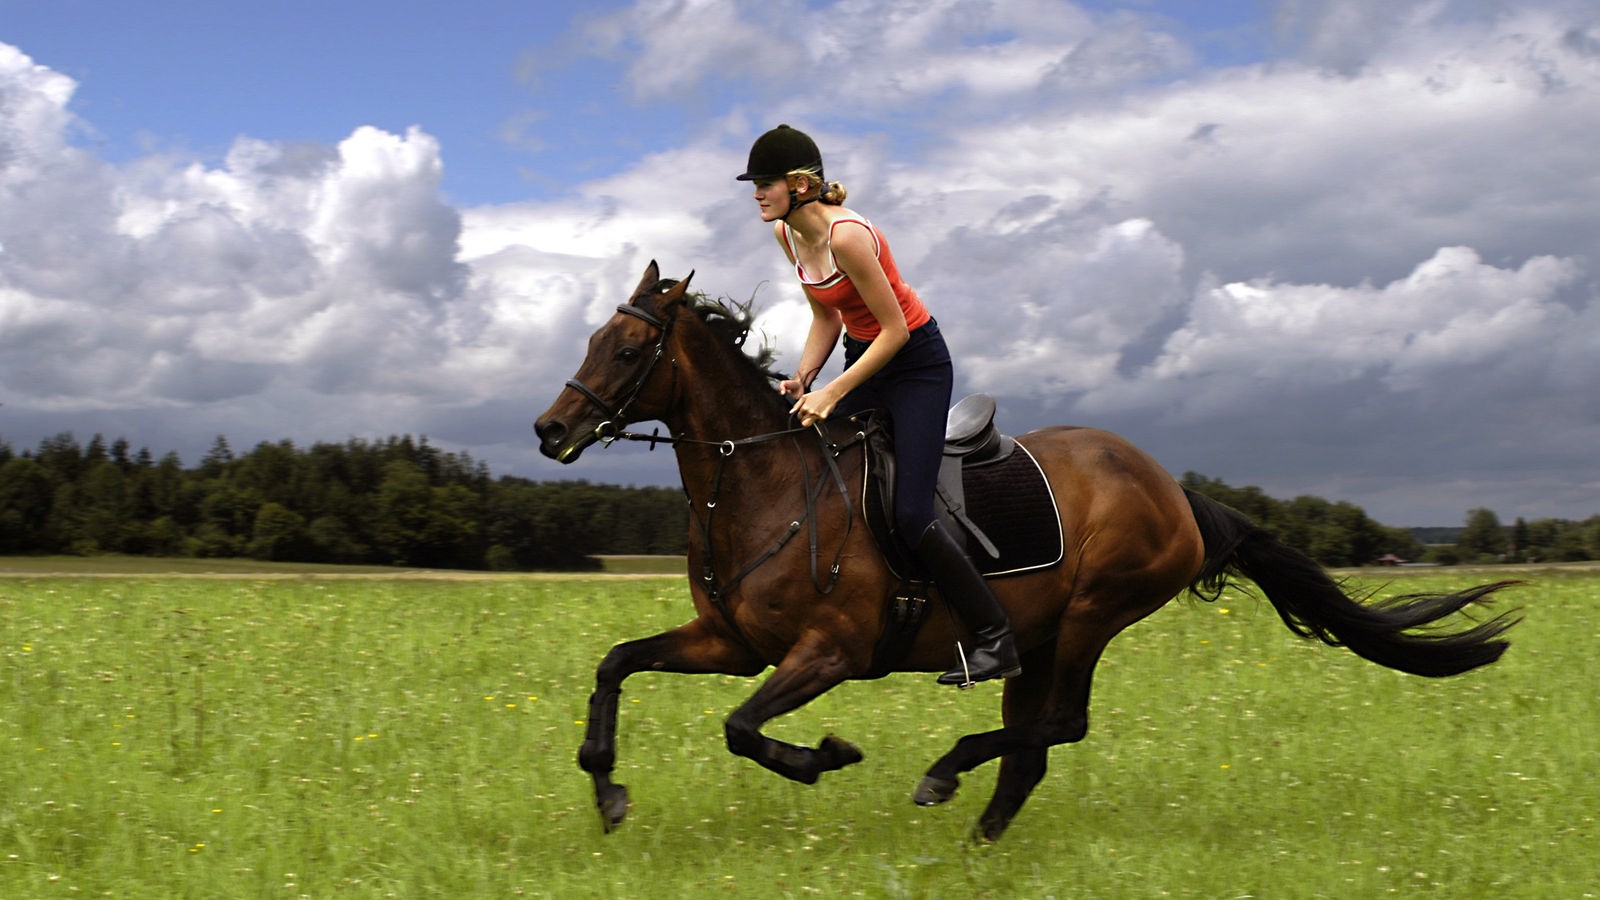 Junge Frau reitet auf einem Pferd über eine Wiese